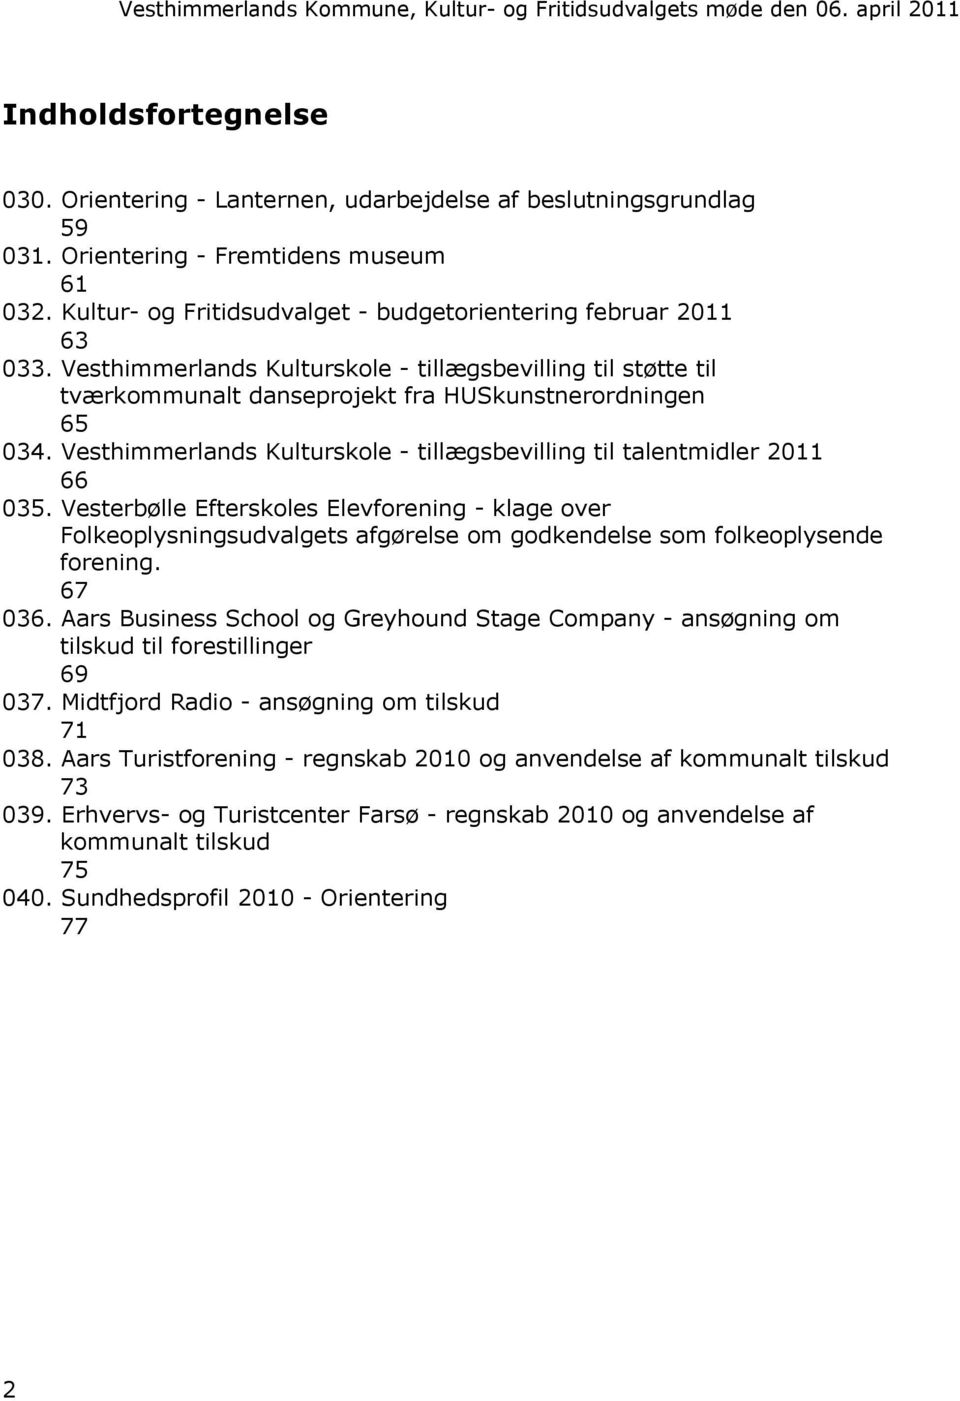 Vesthimmerlands Kulturskole - tillægsbevilling til talentmidler 2011 66 035.